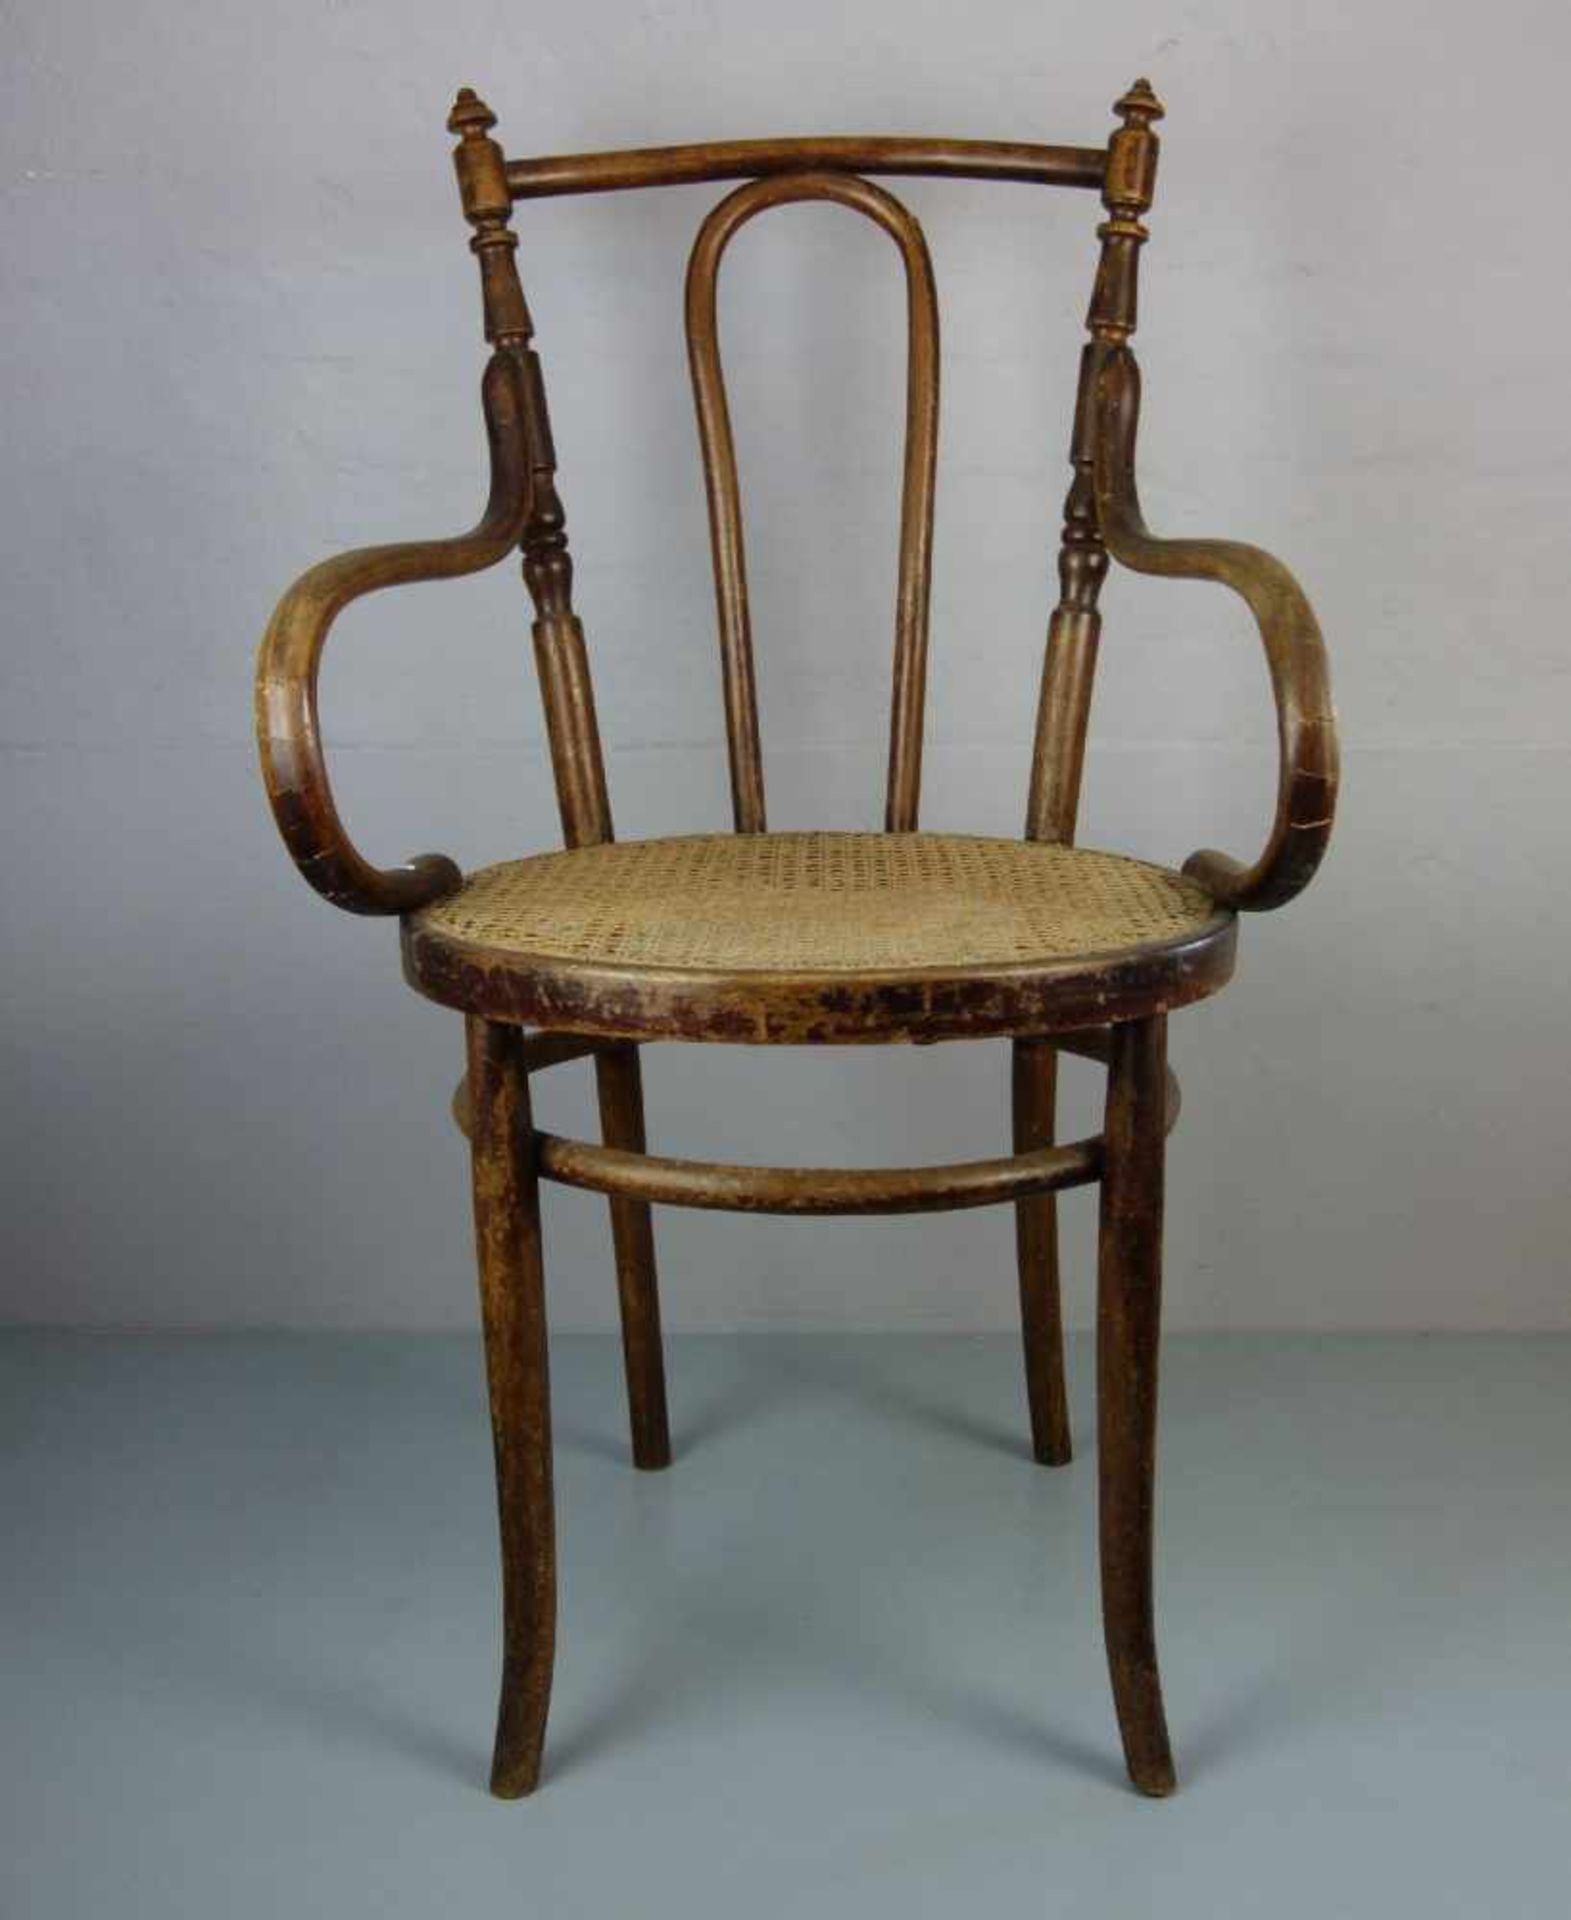 BUGHOLZSTUHL in der Art des Thonet-Stuhls Modell-Nr. 3065. Runde Sitzfläche mit Geflecht auf